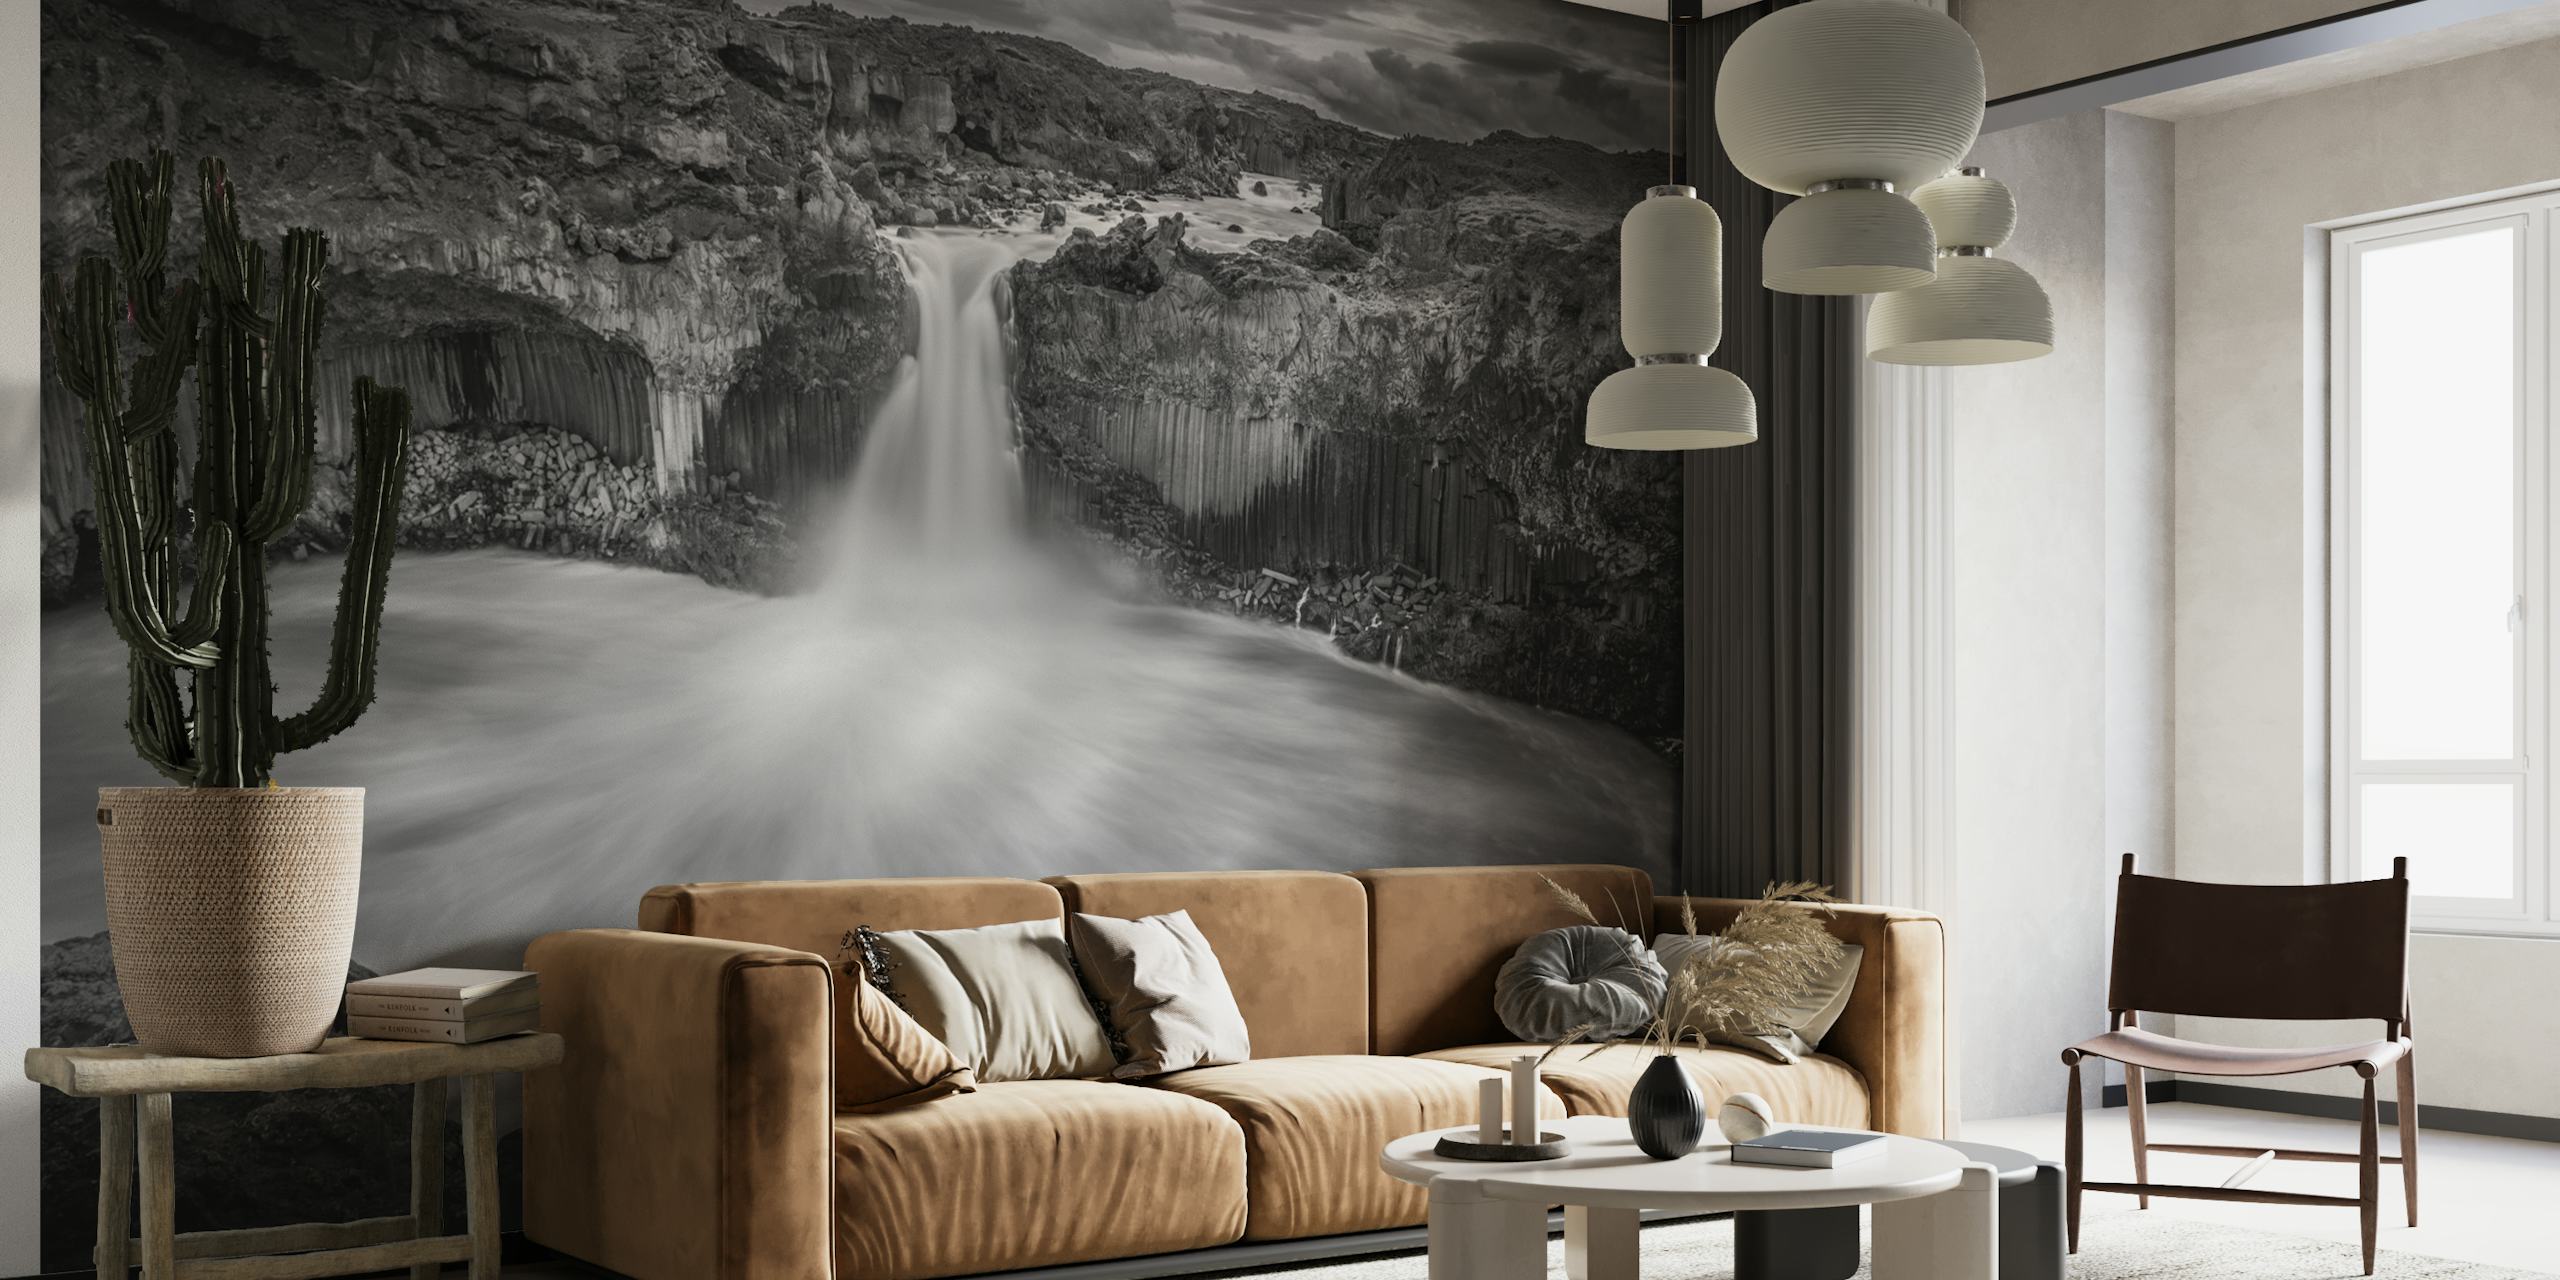 Zwart-witte IJslandse watervalmuurschildering die dramatische contrasten en de grandeur van de natuur weergeeft.